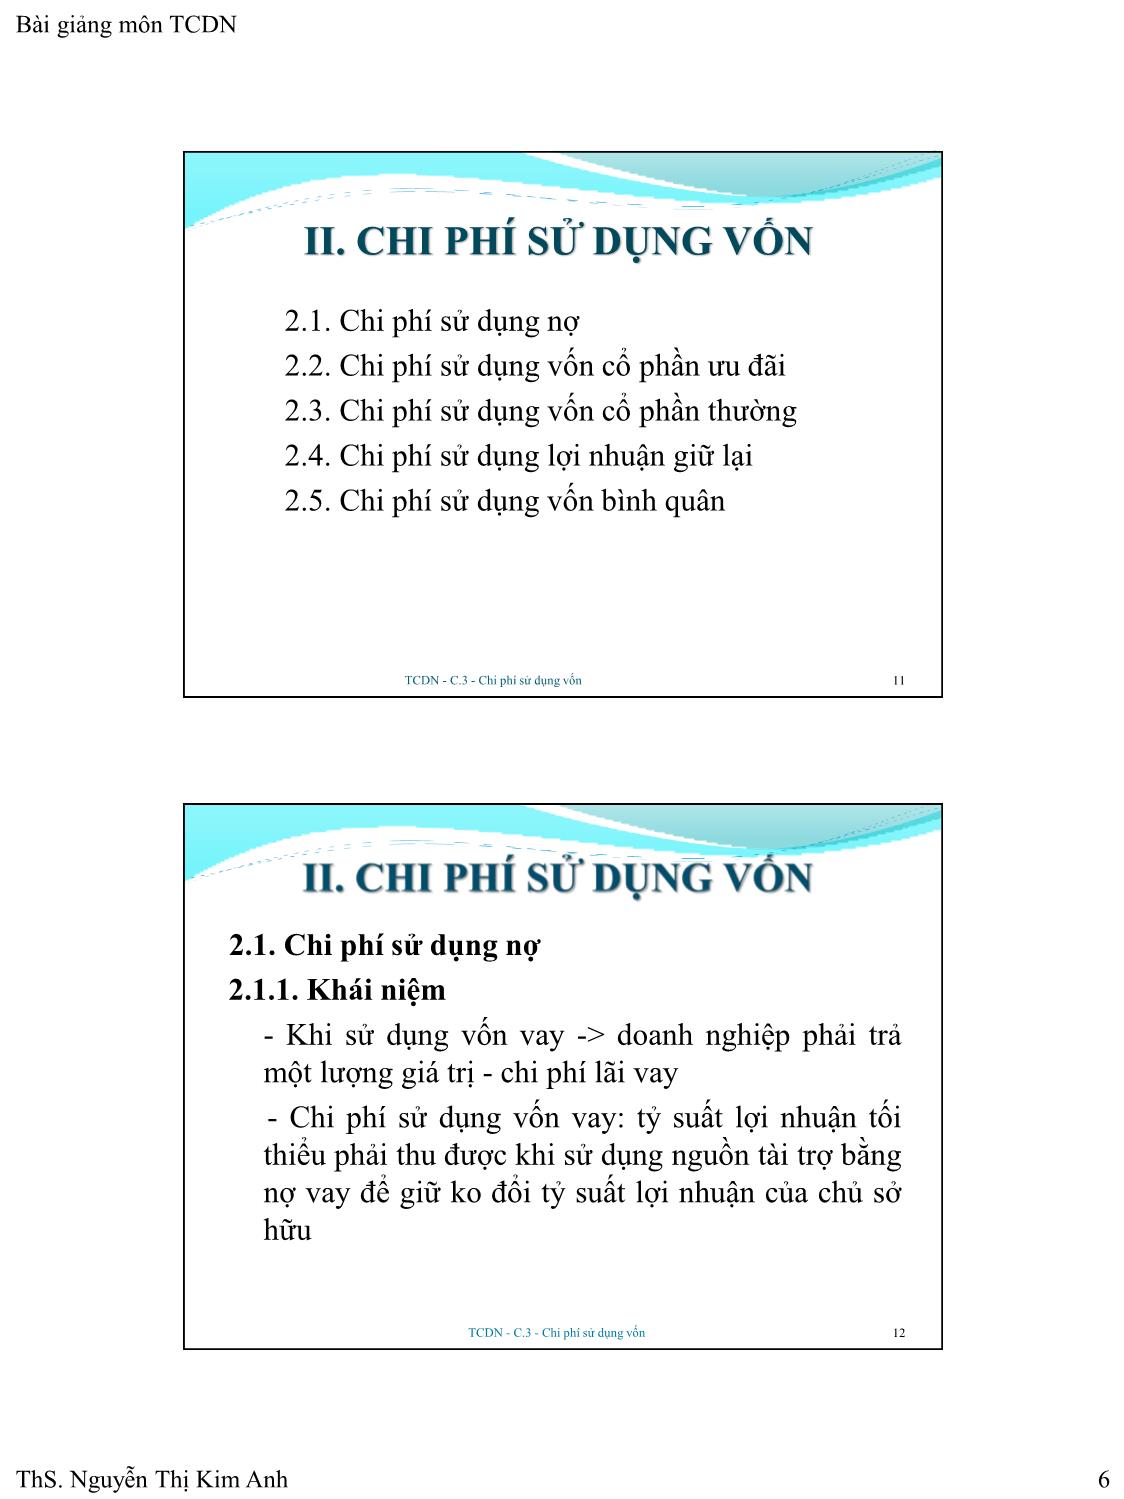 Bài giảng Tài chính doanh nghiệp - Chương 3: Chi phí sử dụng vốn - Nguyễn Thị Kim Anh trang 6